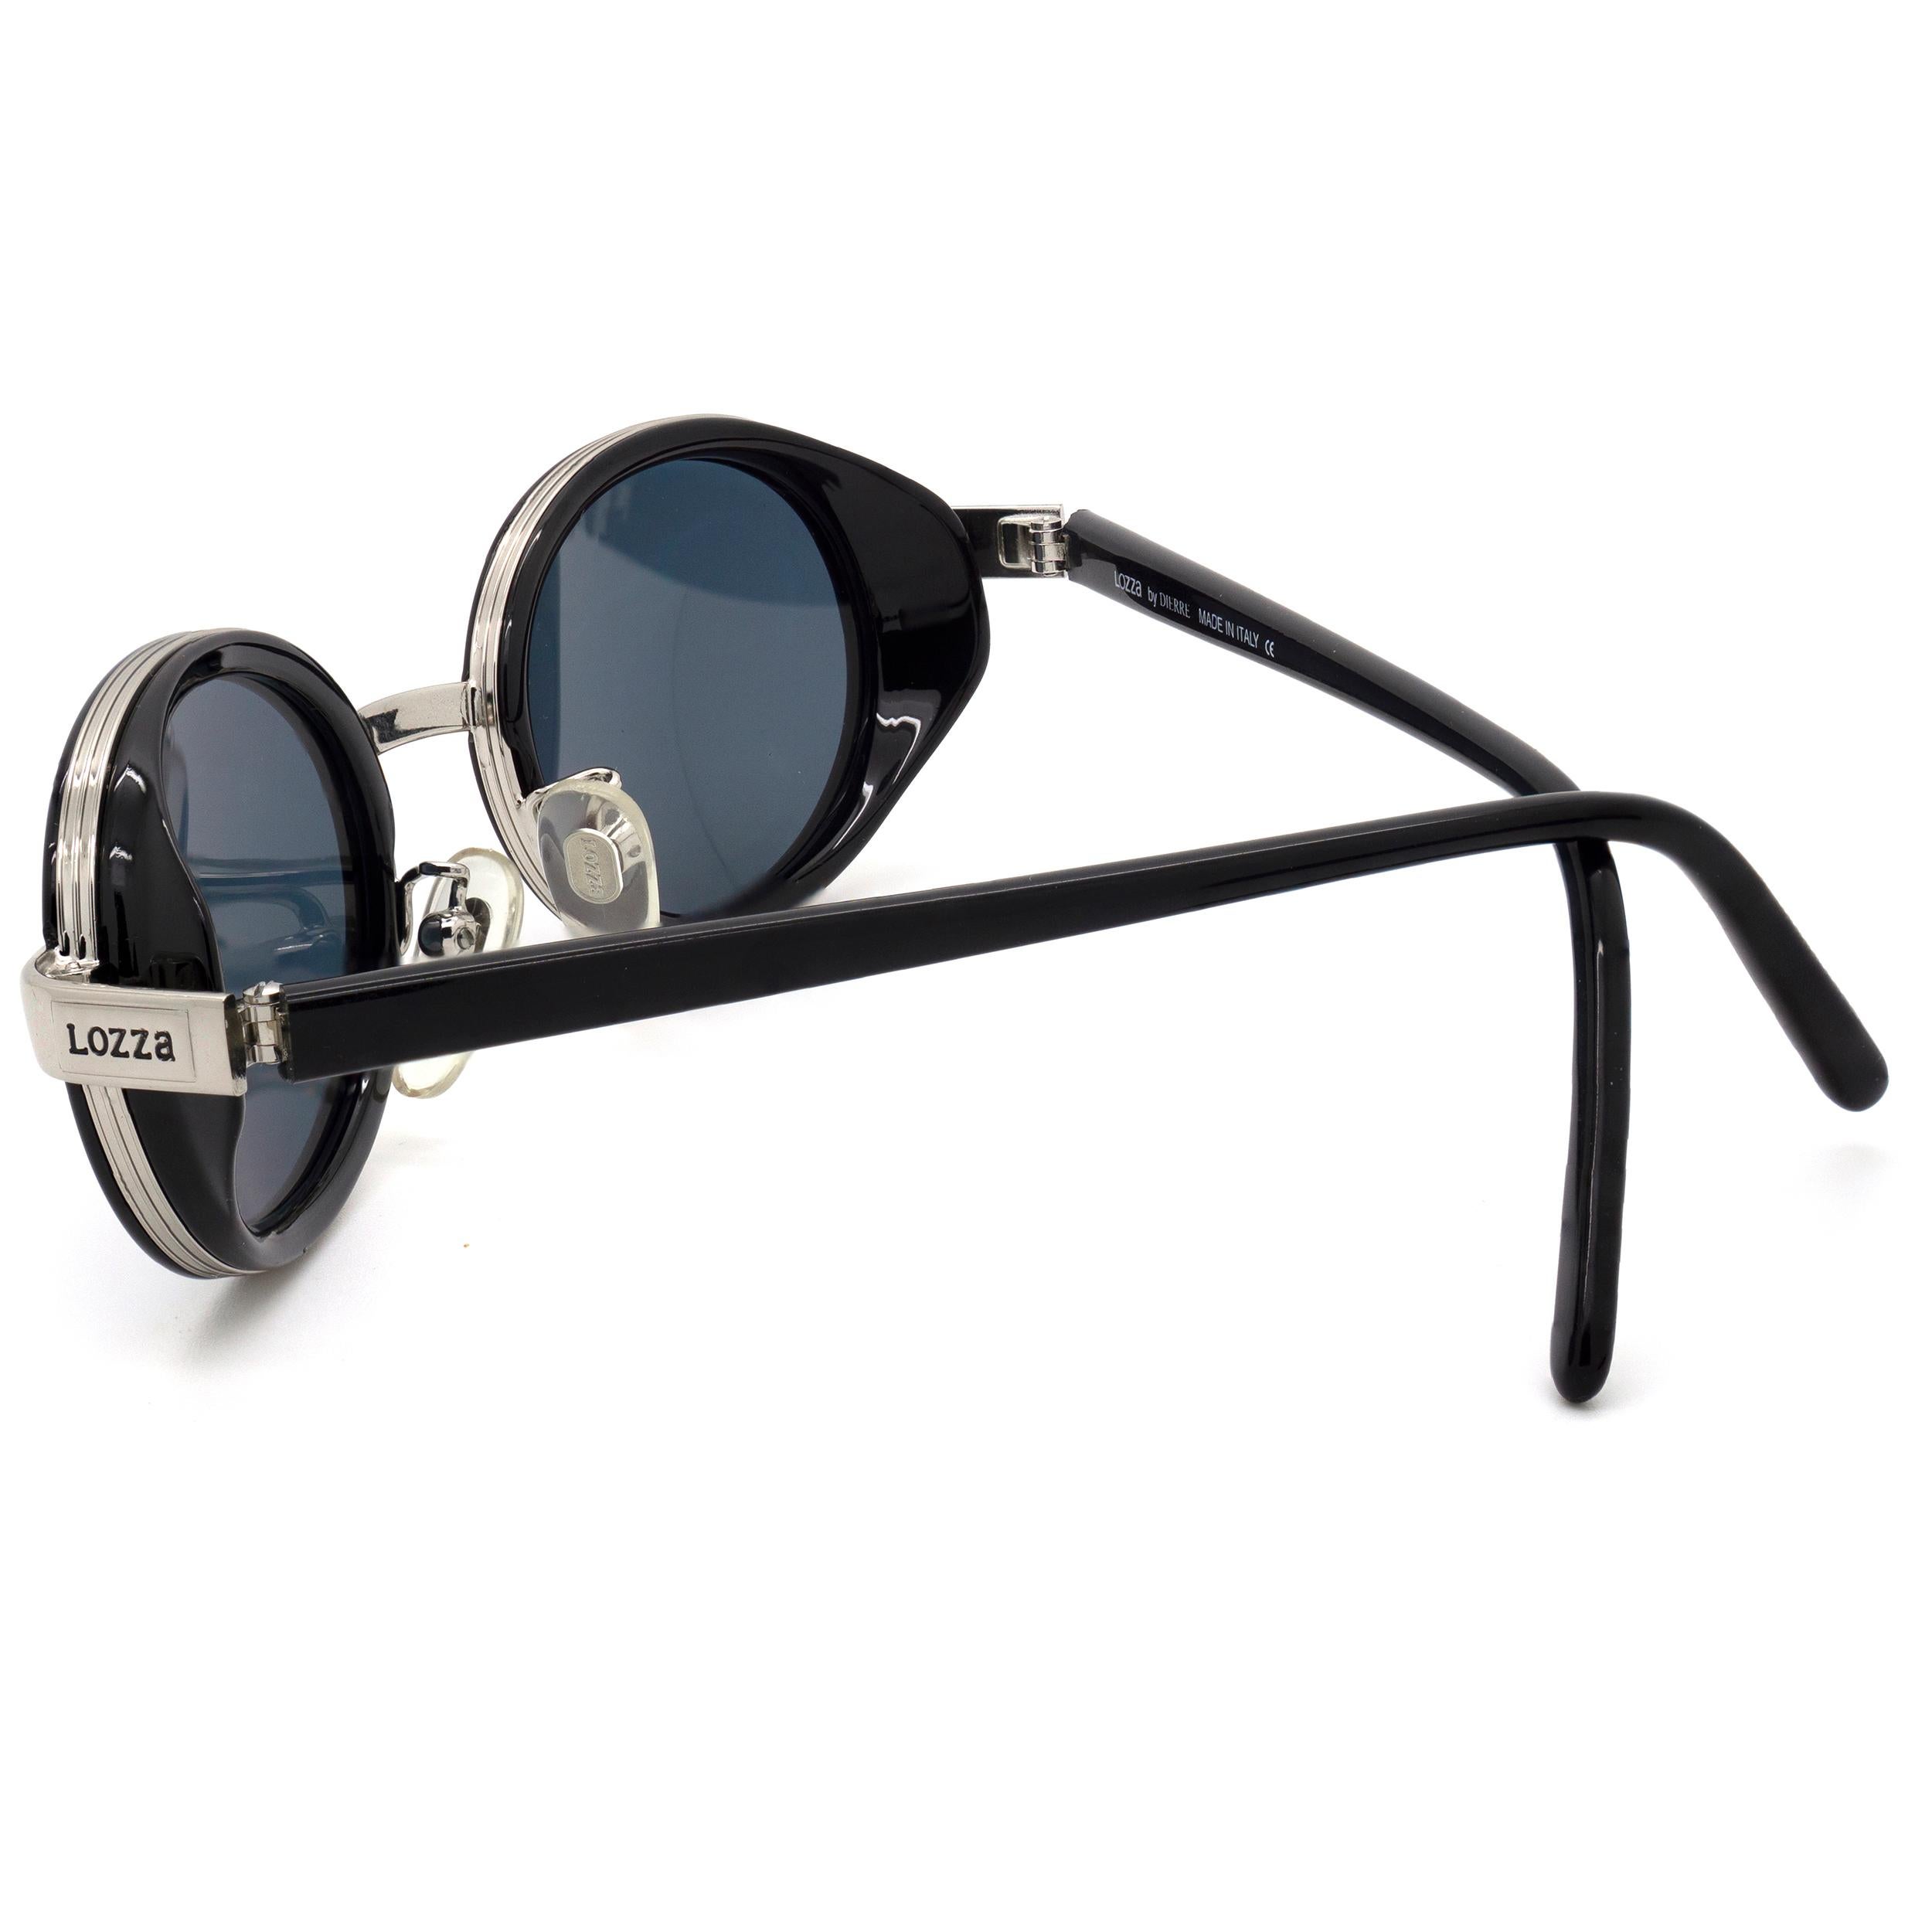 lozza sunglasses for sale